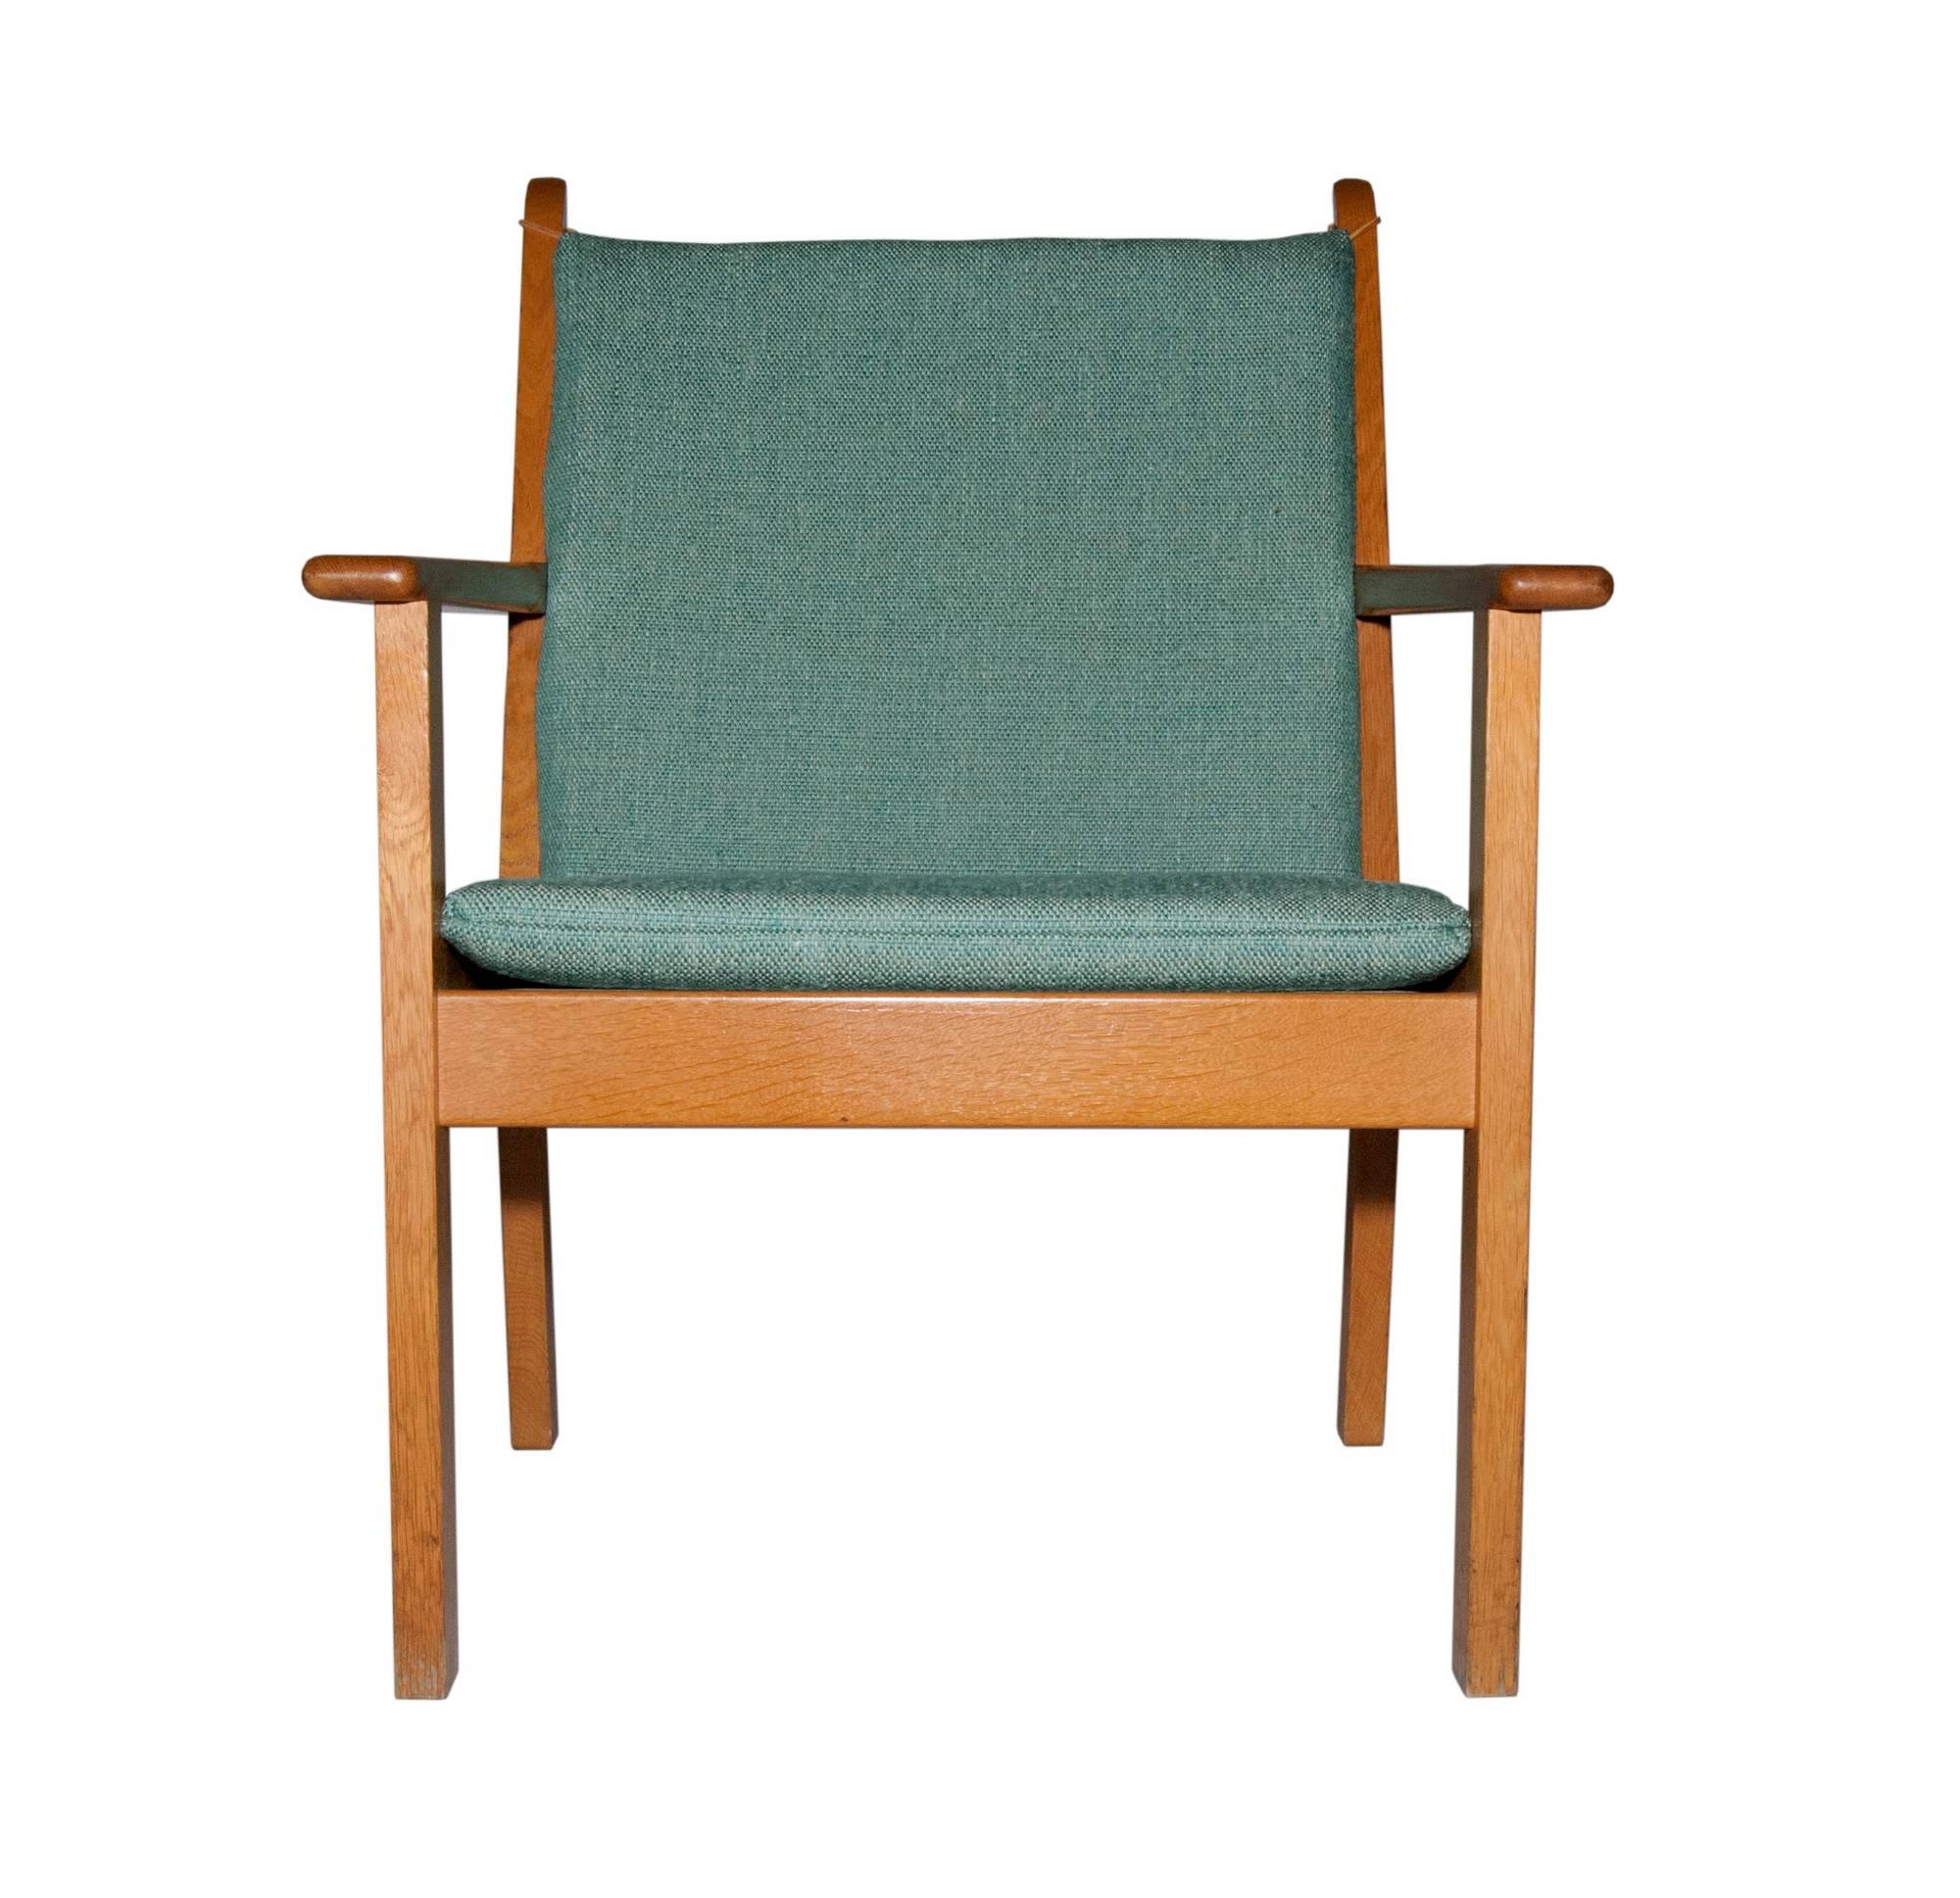 Vintage oak frame lounge chair designed by Hans J. Wegner for GETAMA, Denmark. Original cushion, with light wear. Marked. Measures: Arm 23" H.